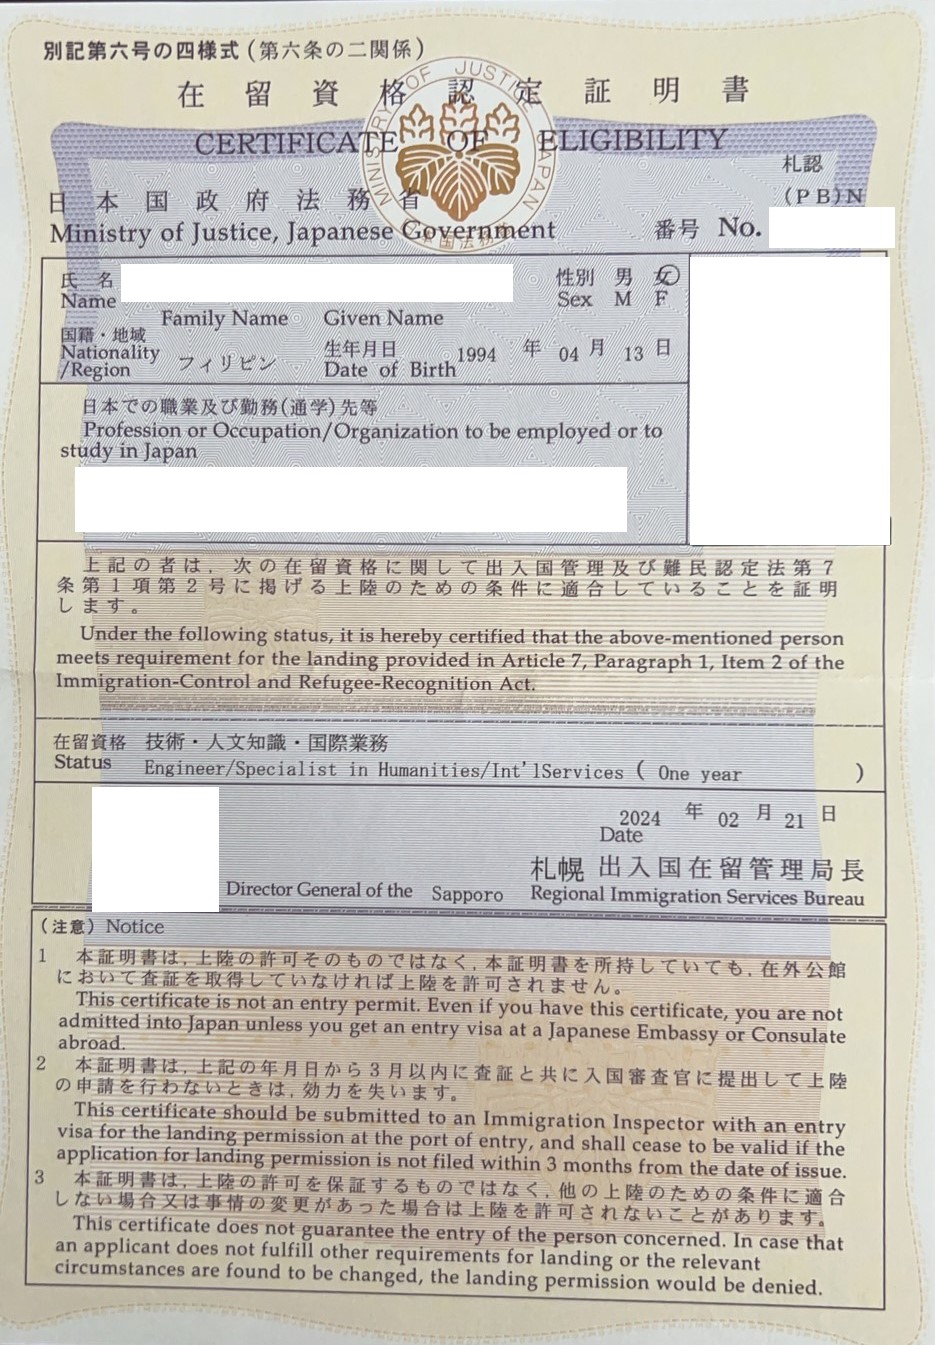 【在留資格認定】 【Certification of residence status】　【在留资格认定证明】